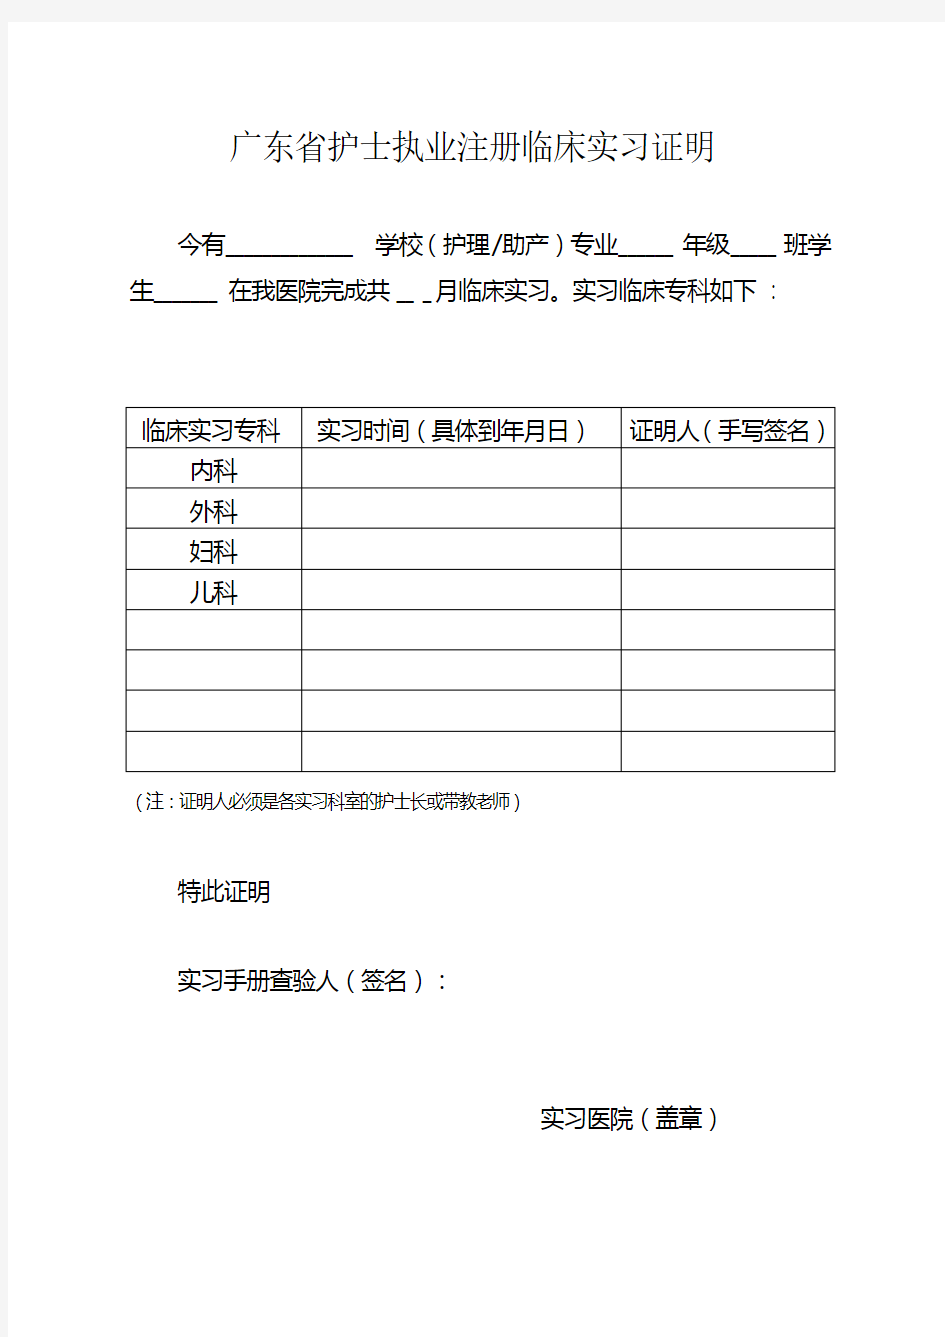 广东省护士执业注册临床实习证明